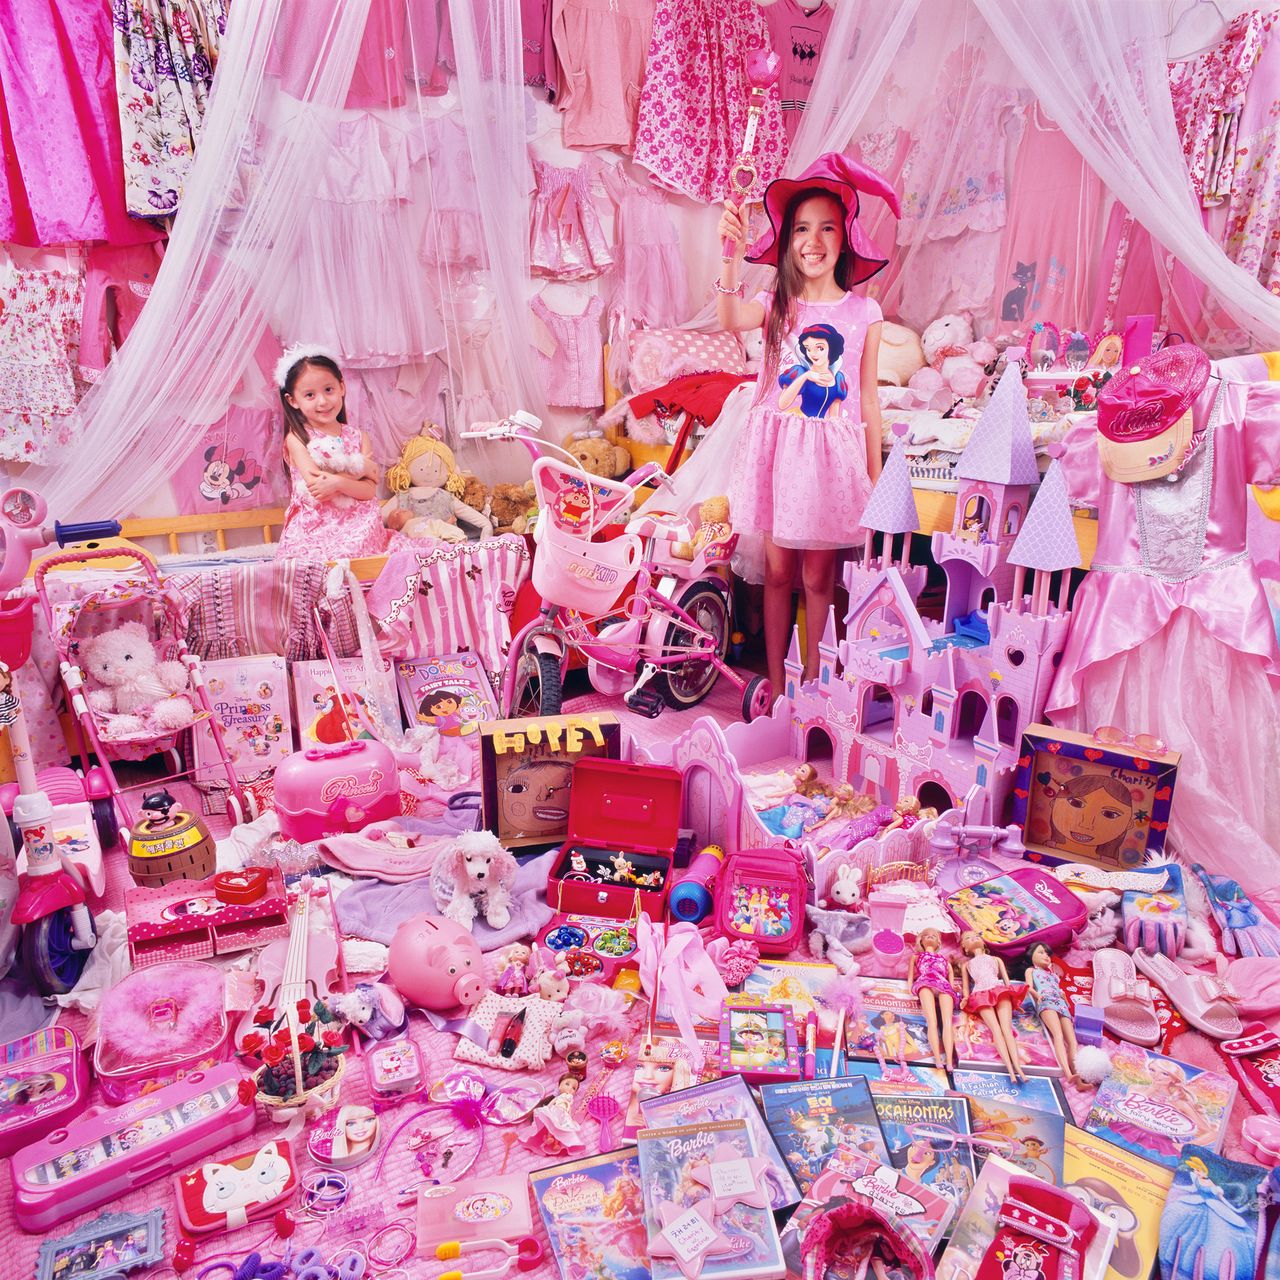 Projekt koreańskiego foografa Jeongmee Yoona, "The Pink and Blue" („Różowy i niebieski”), zrodził się z zamiłowania jego sześcioletniej córki do różowych zabawek, ciuchów i innych rzeczy.